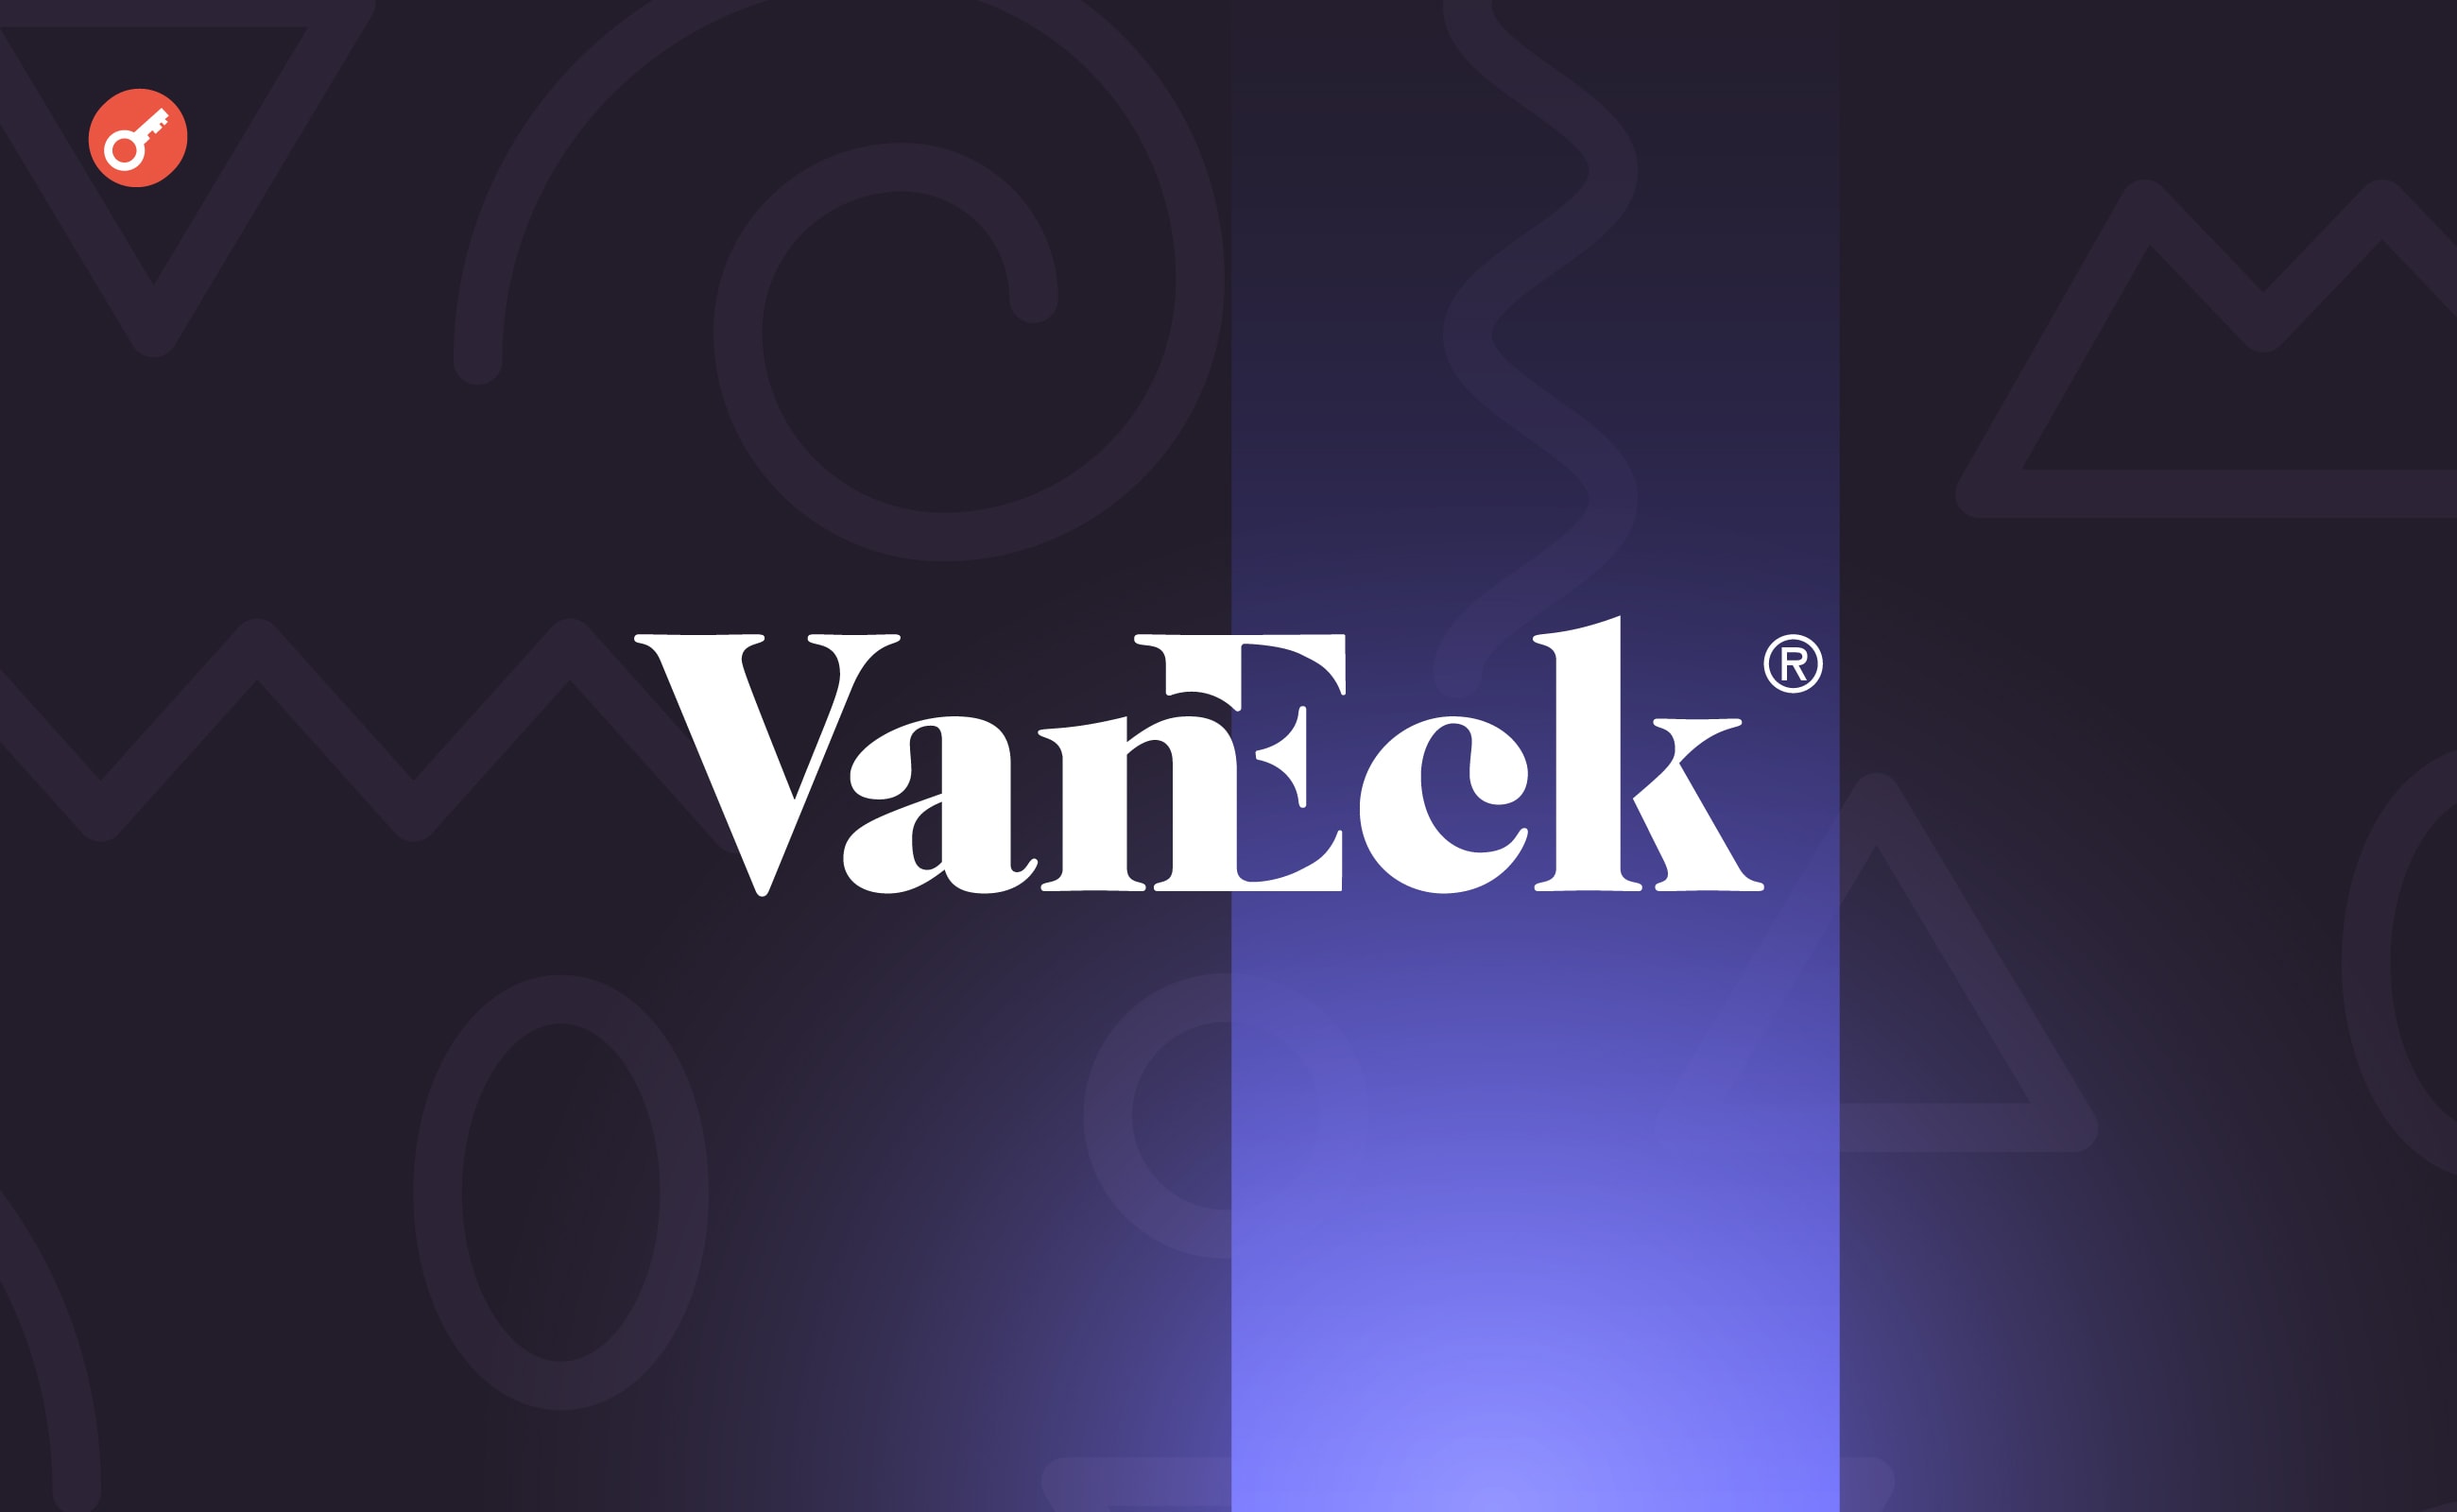 VanEck запустила NFT-маркетплейс и площадку цифровых активов SegMint. Заглавный коллаж новости.